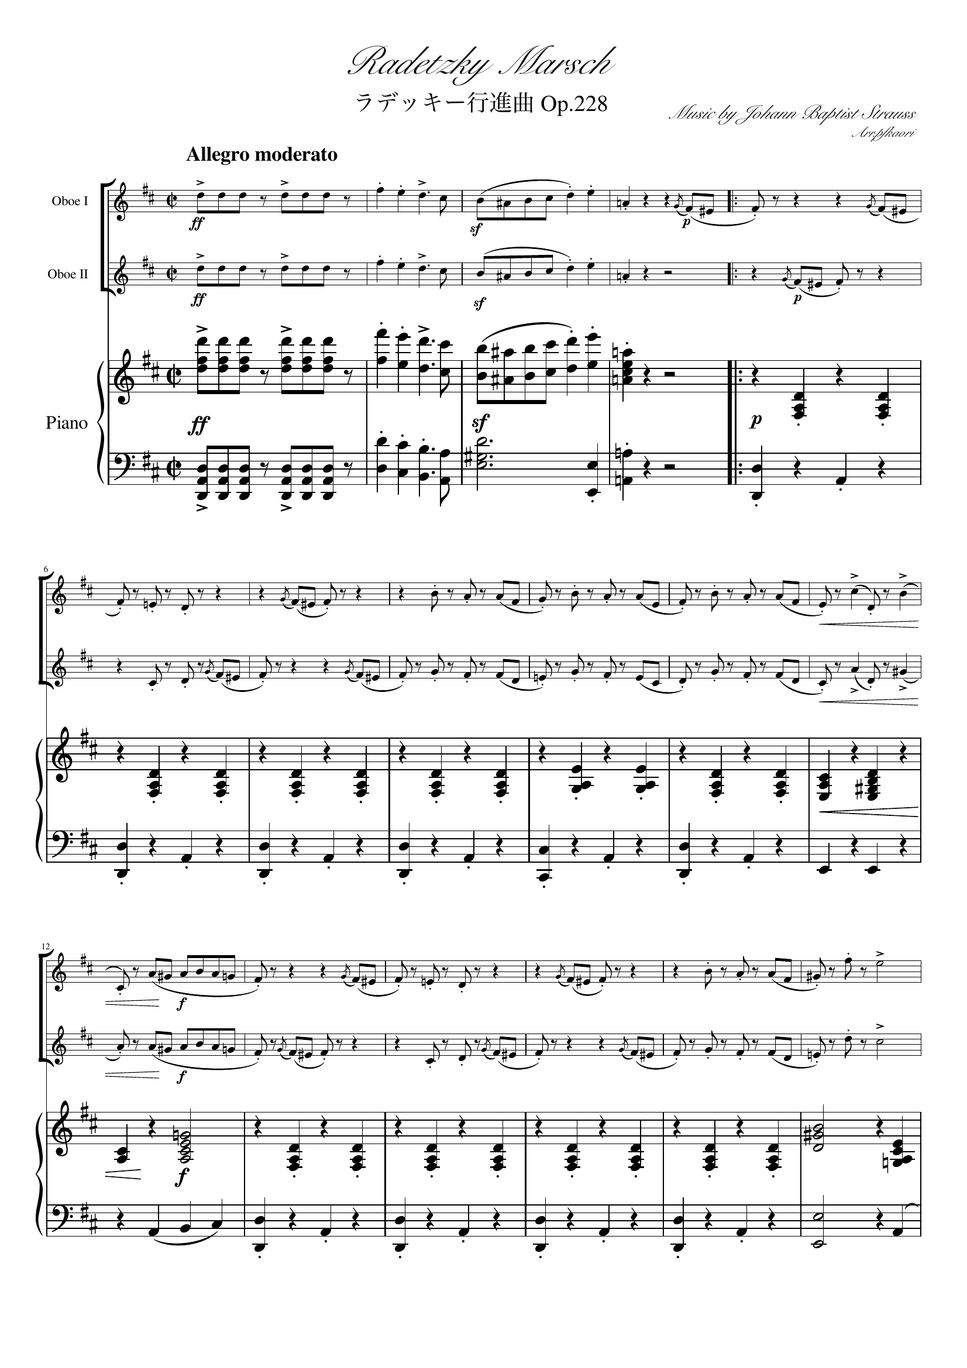 ヨハンシュトラウス1世 - ラデッキー行進曲 (D・ピアノトリオ/オーボエデュオ) by pfkaori